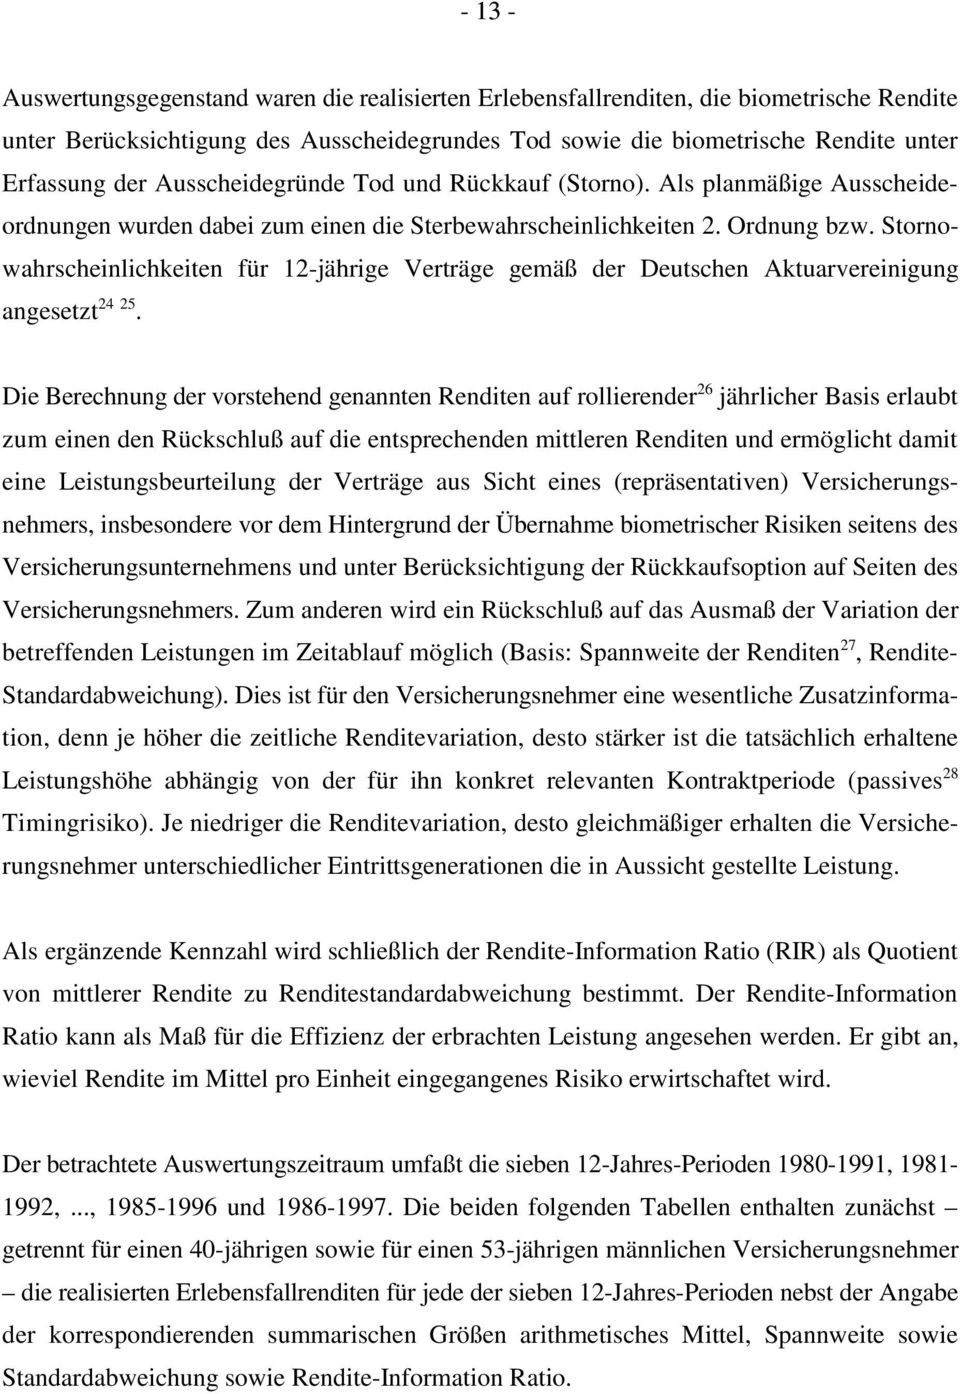 Stornowahrscheinlichkeiten für 12jährige Verträge gemäß der Deutschen Aktuarvereinigung 24 25 angesetzt.